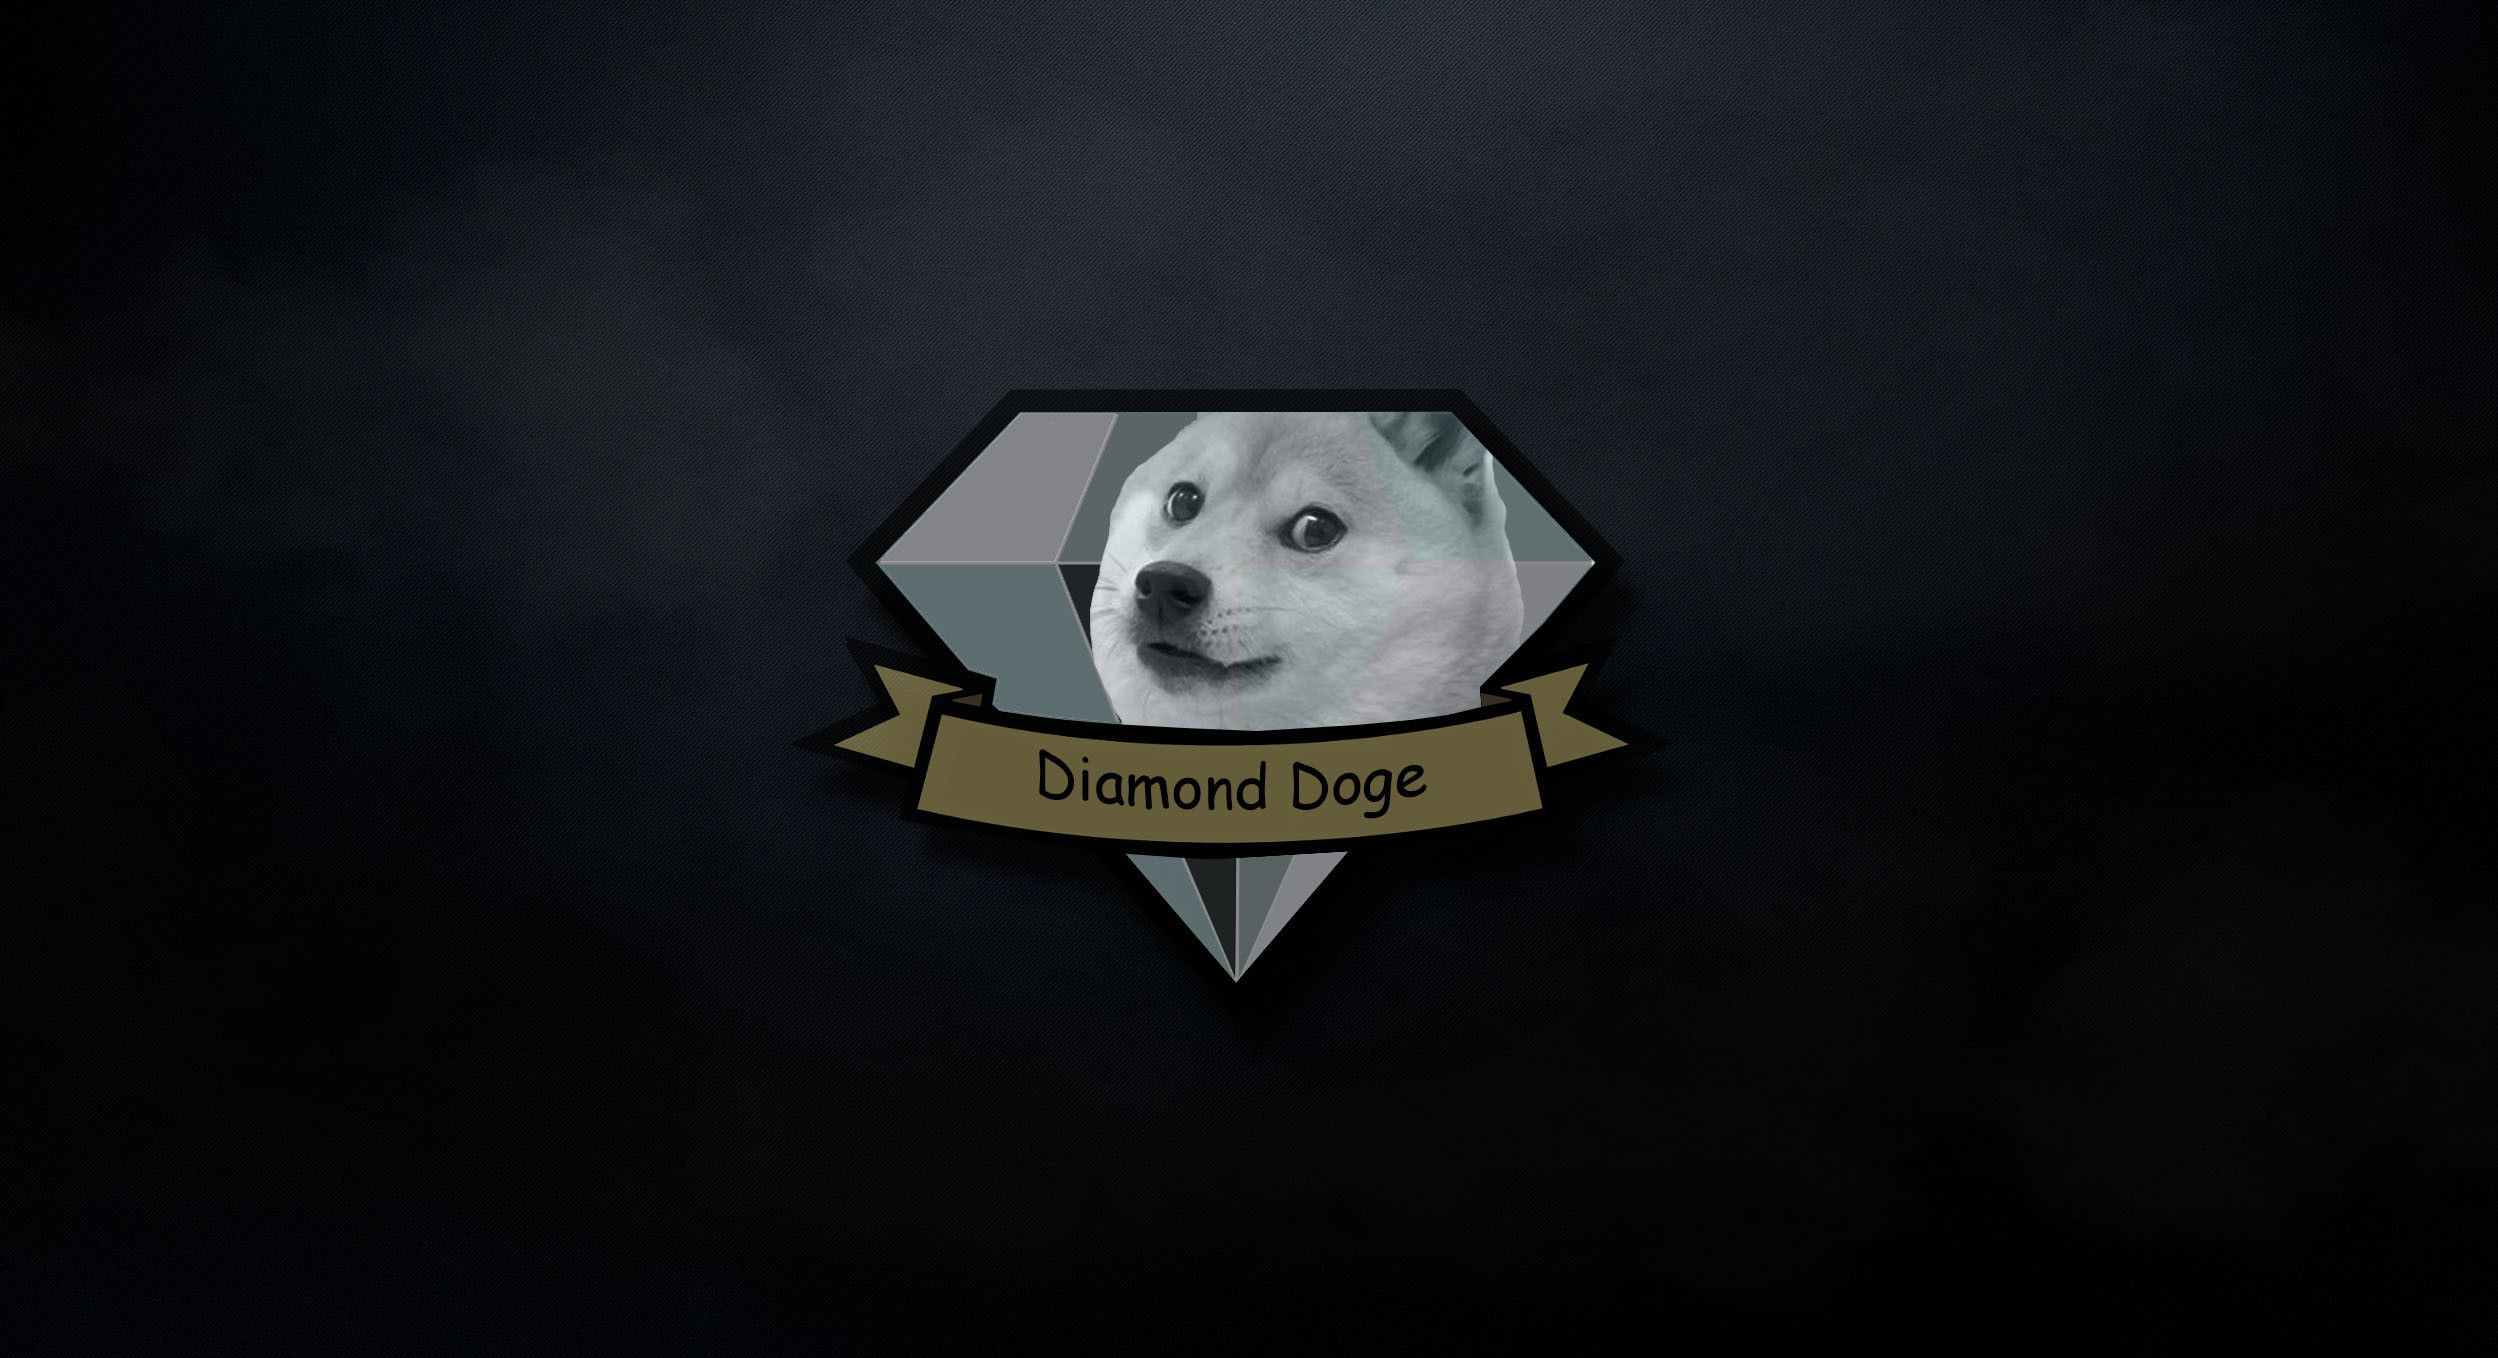 Doge Meme Wallpaper. Doge meme, Doge, Wallpaper